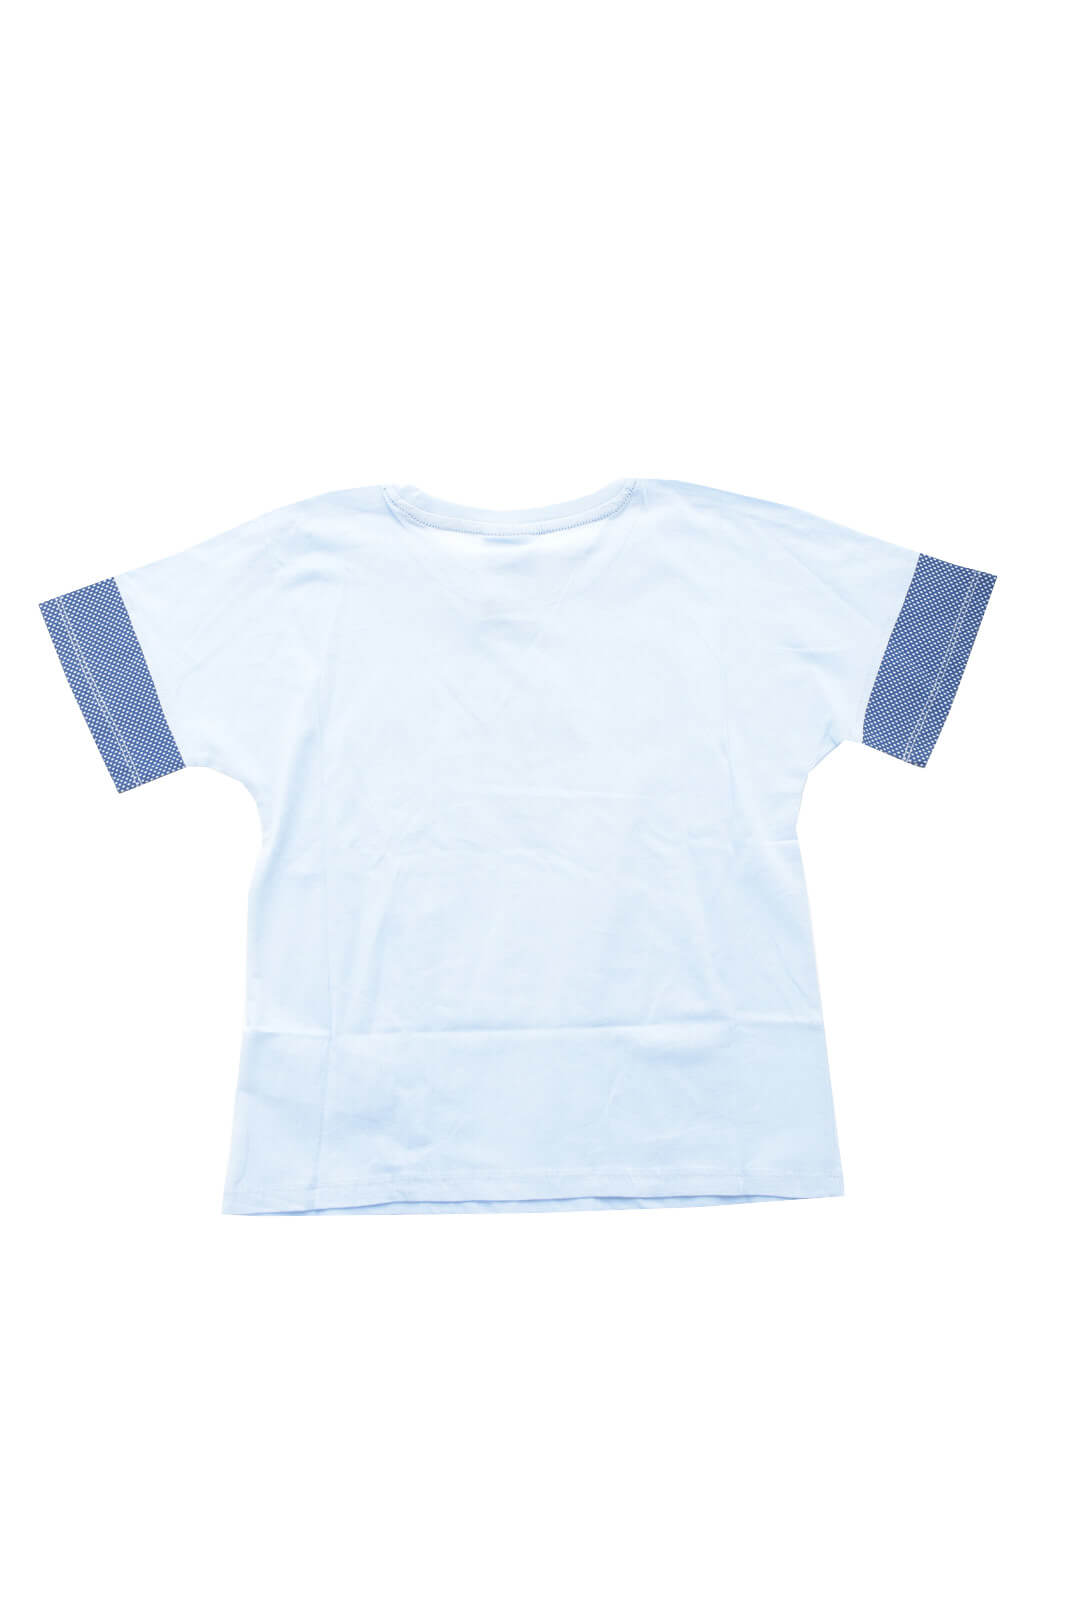 Diadora T Shirt for girls